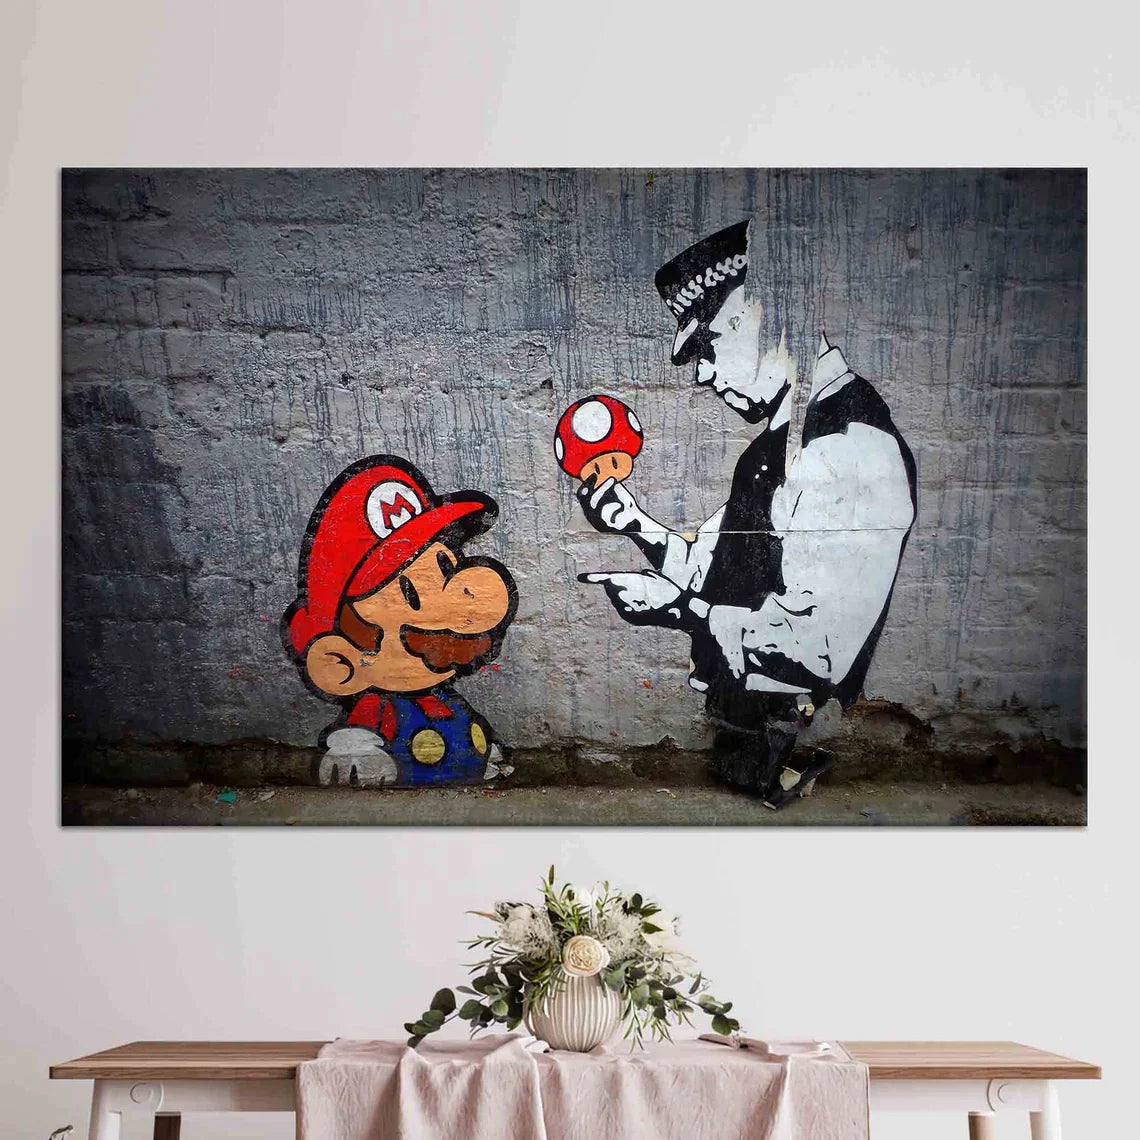 Street Gaming Revolution: Super Mario x Banksy